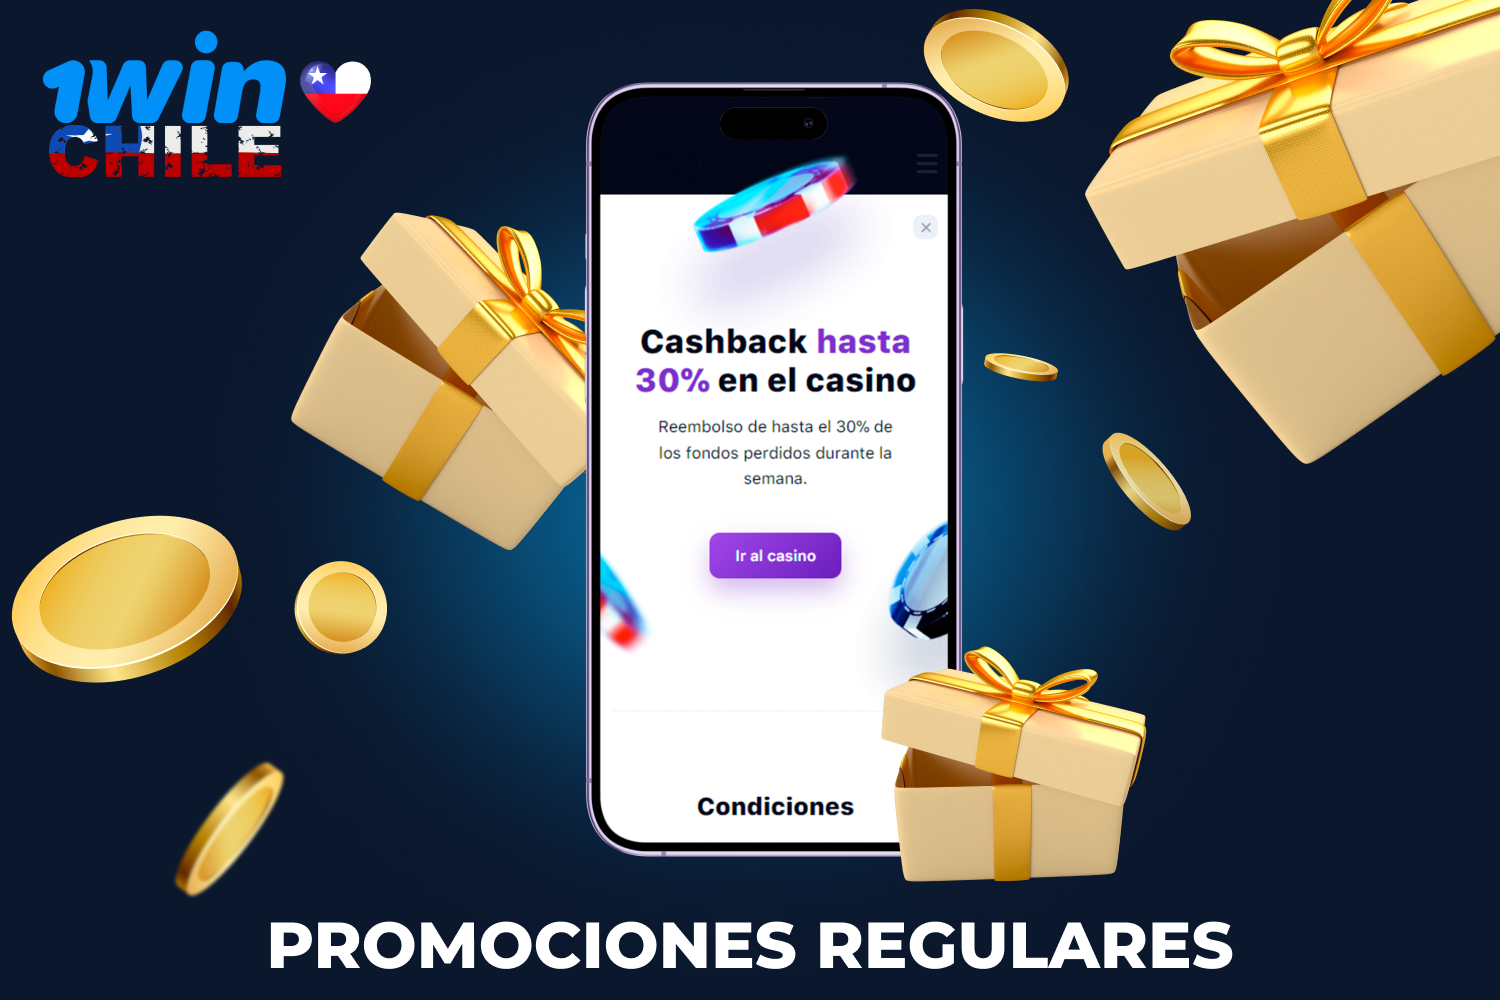 Los fans del casino 1win de Chile pueden ganar cacheback haciendo apuestas regulares